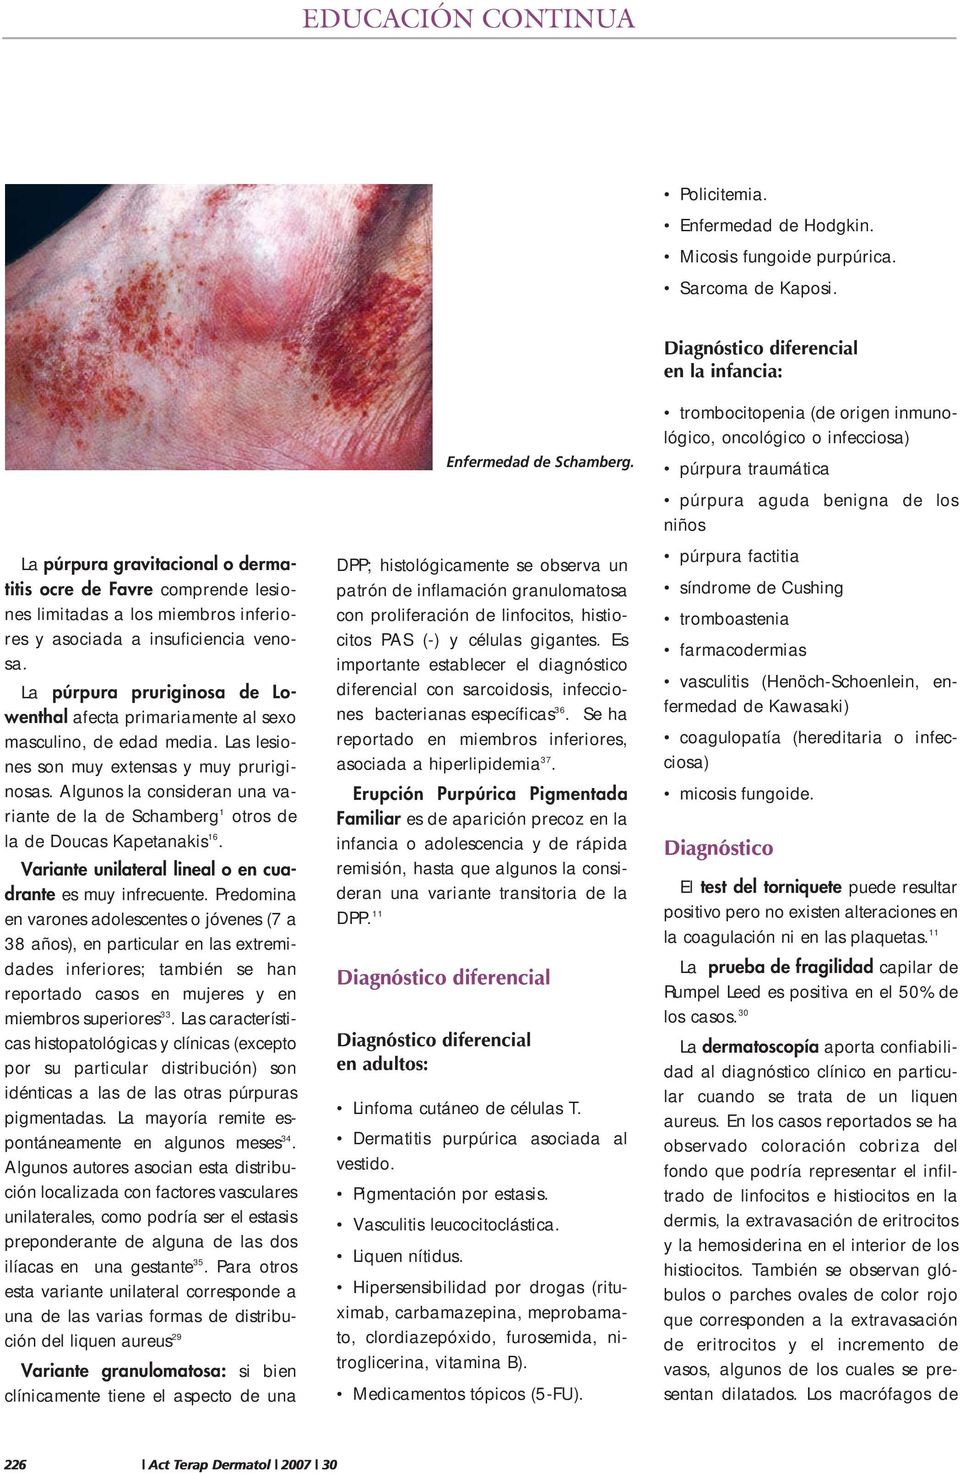 La púrpura pruriginosa de Lowenthal afecta primariamente al sexo masculino, de edad media. Las lesiones son muy extensas y muy pruriginosas.